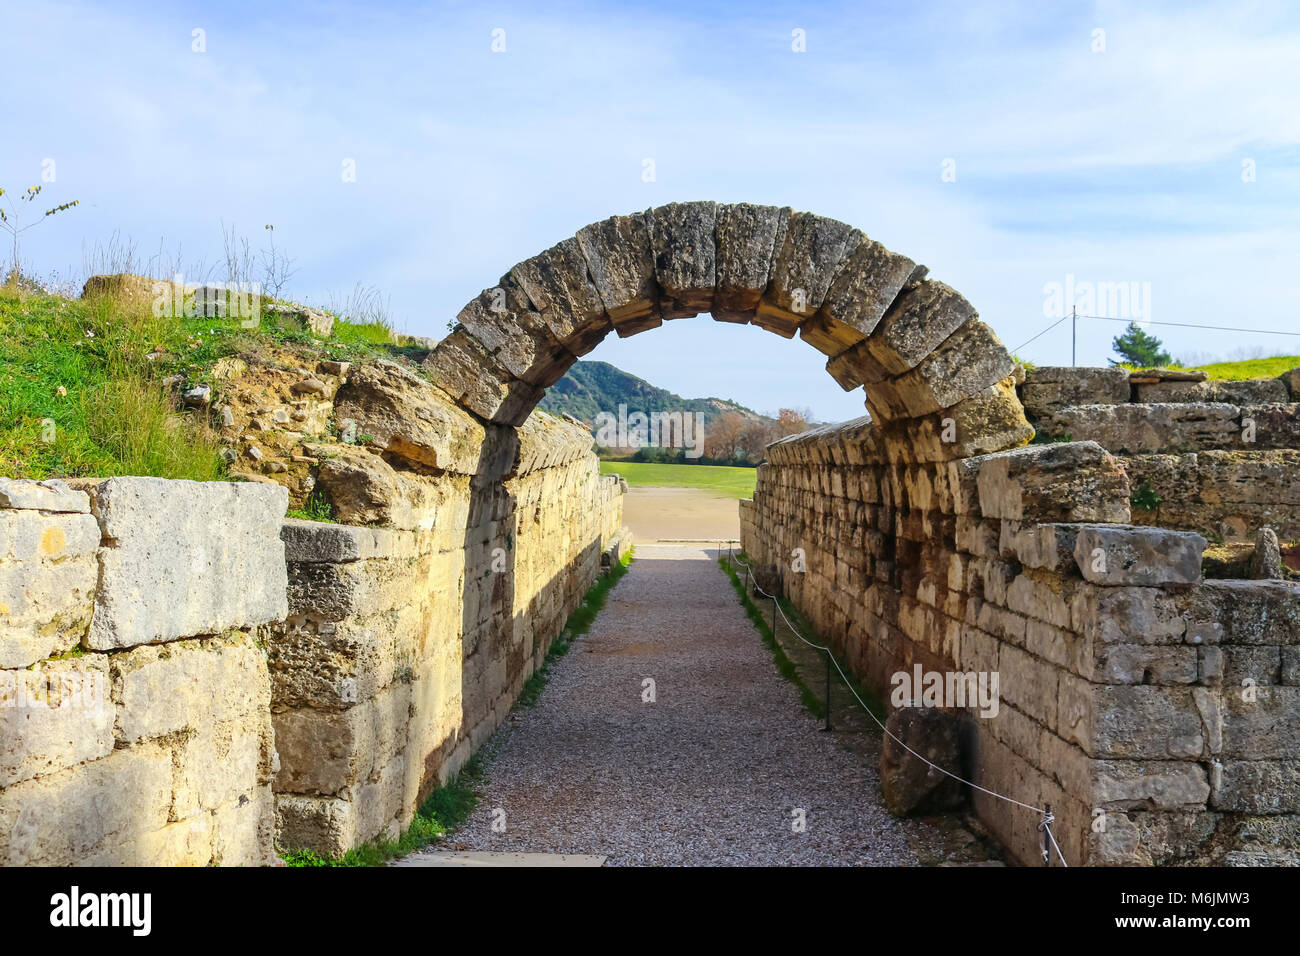 Das Feld, in dem die ursprüngliche Olympics gesehen durch die Ruinen des Radkastens durch, die der Griechische atheletes in Olympia, Griechenland lief gehalten wurden Stockfoto